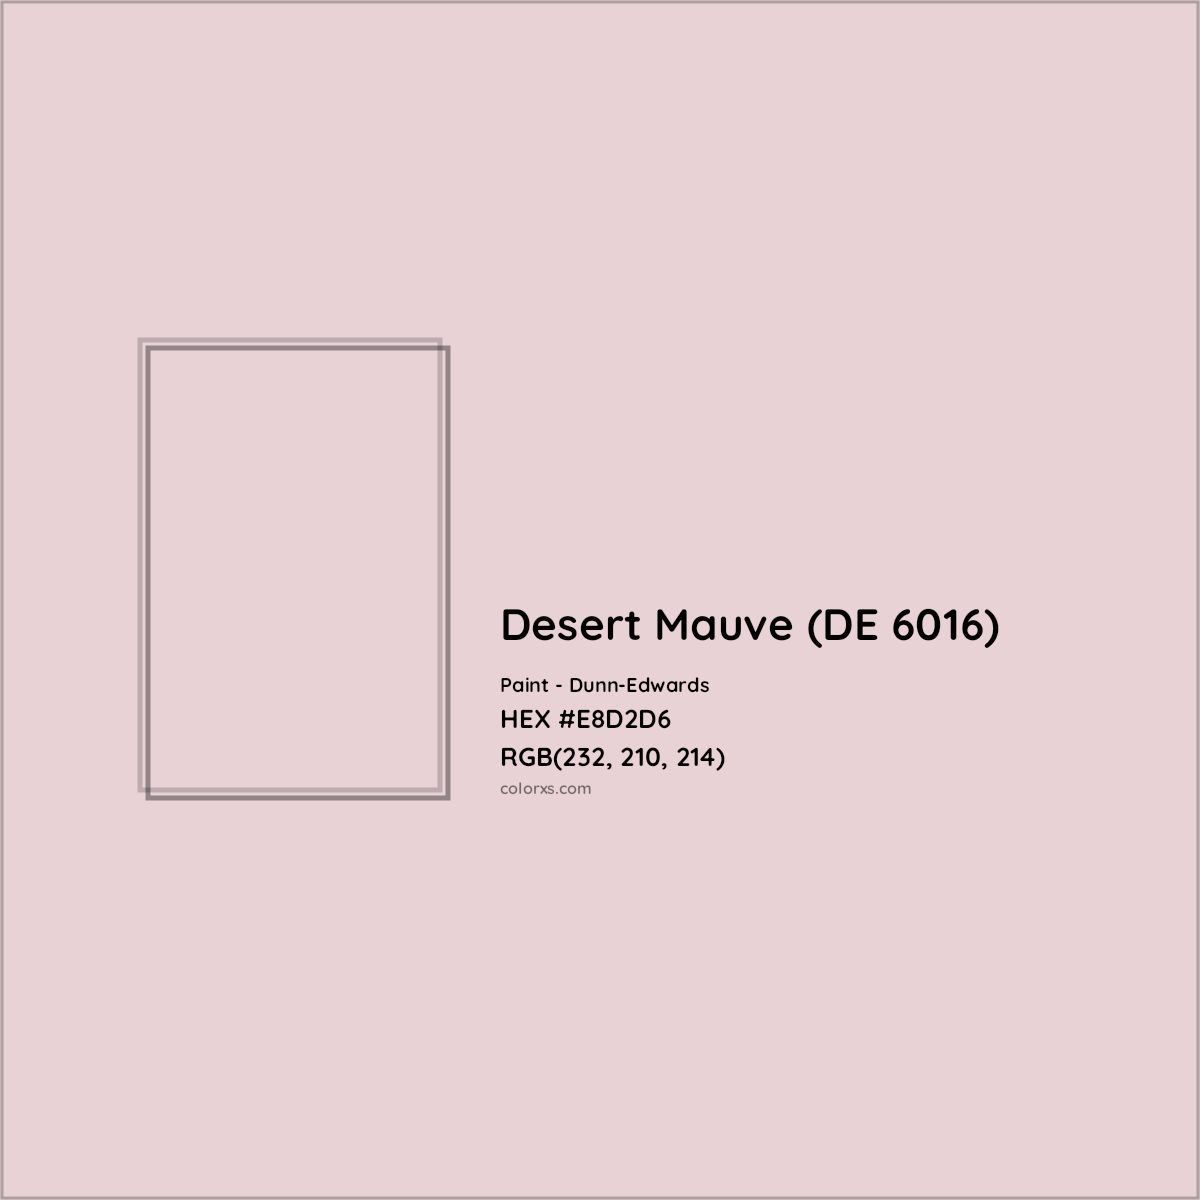 HEX #E8D2D6 Desert Mauve (DE 6016) Paint Dunn-Edwards - Color Code